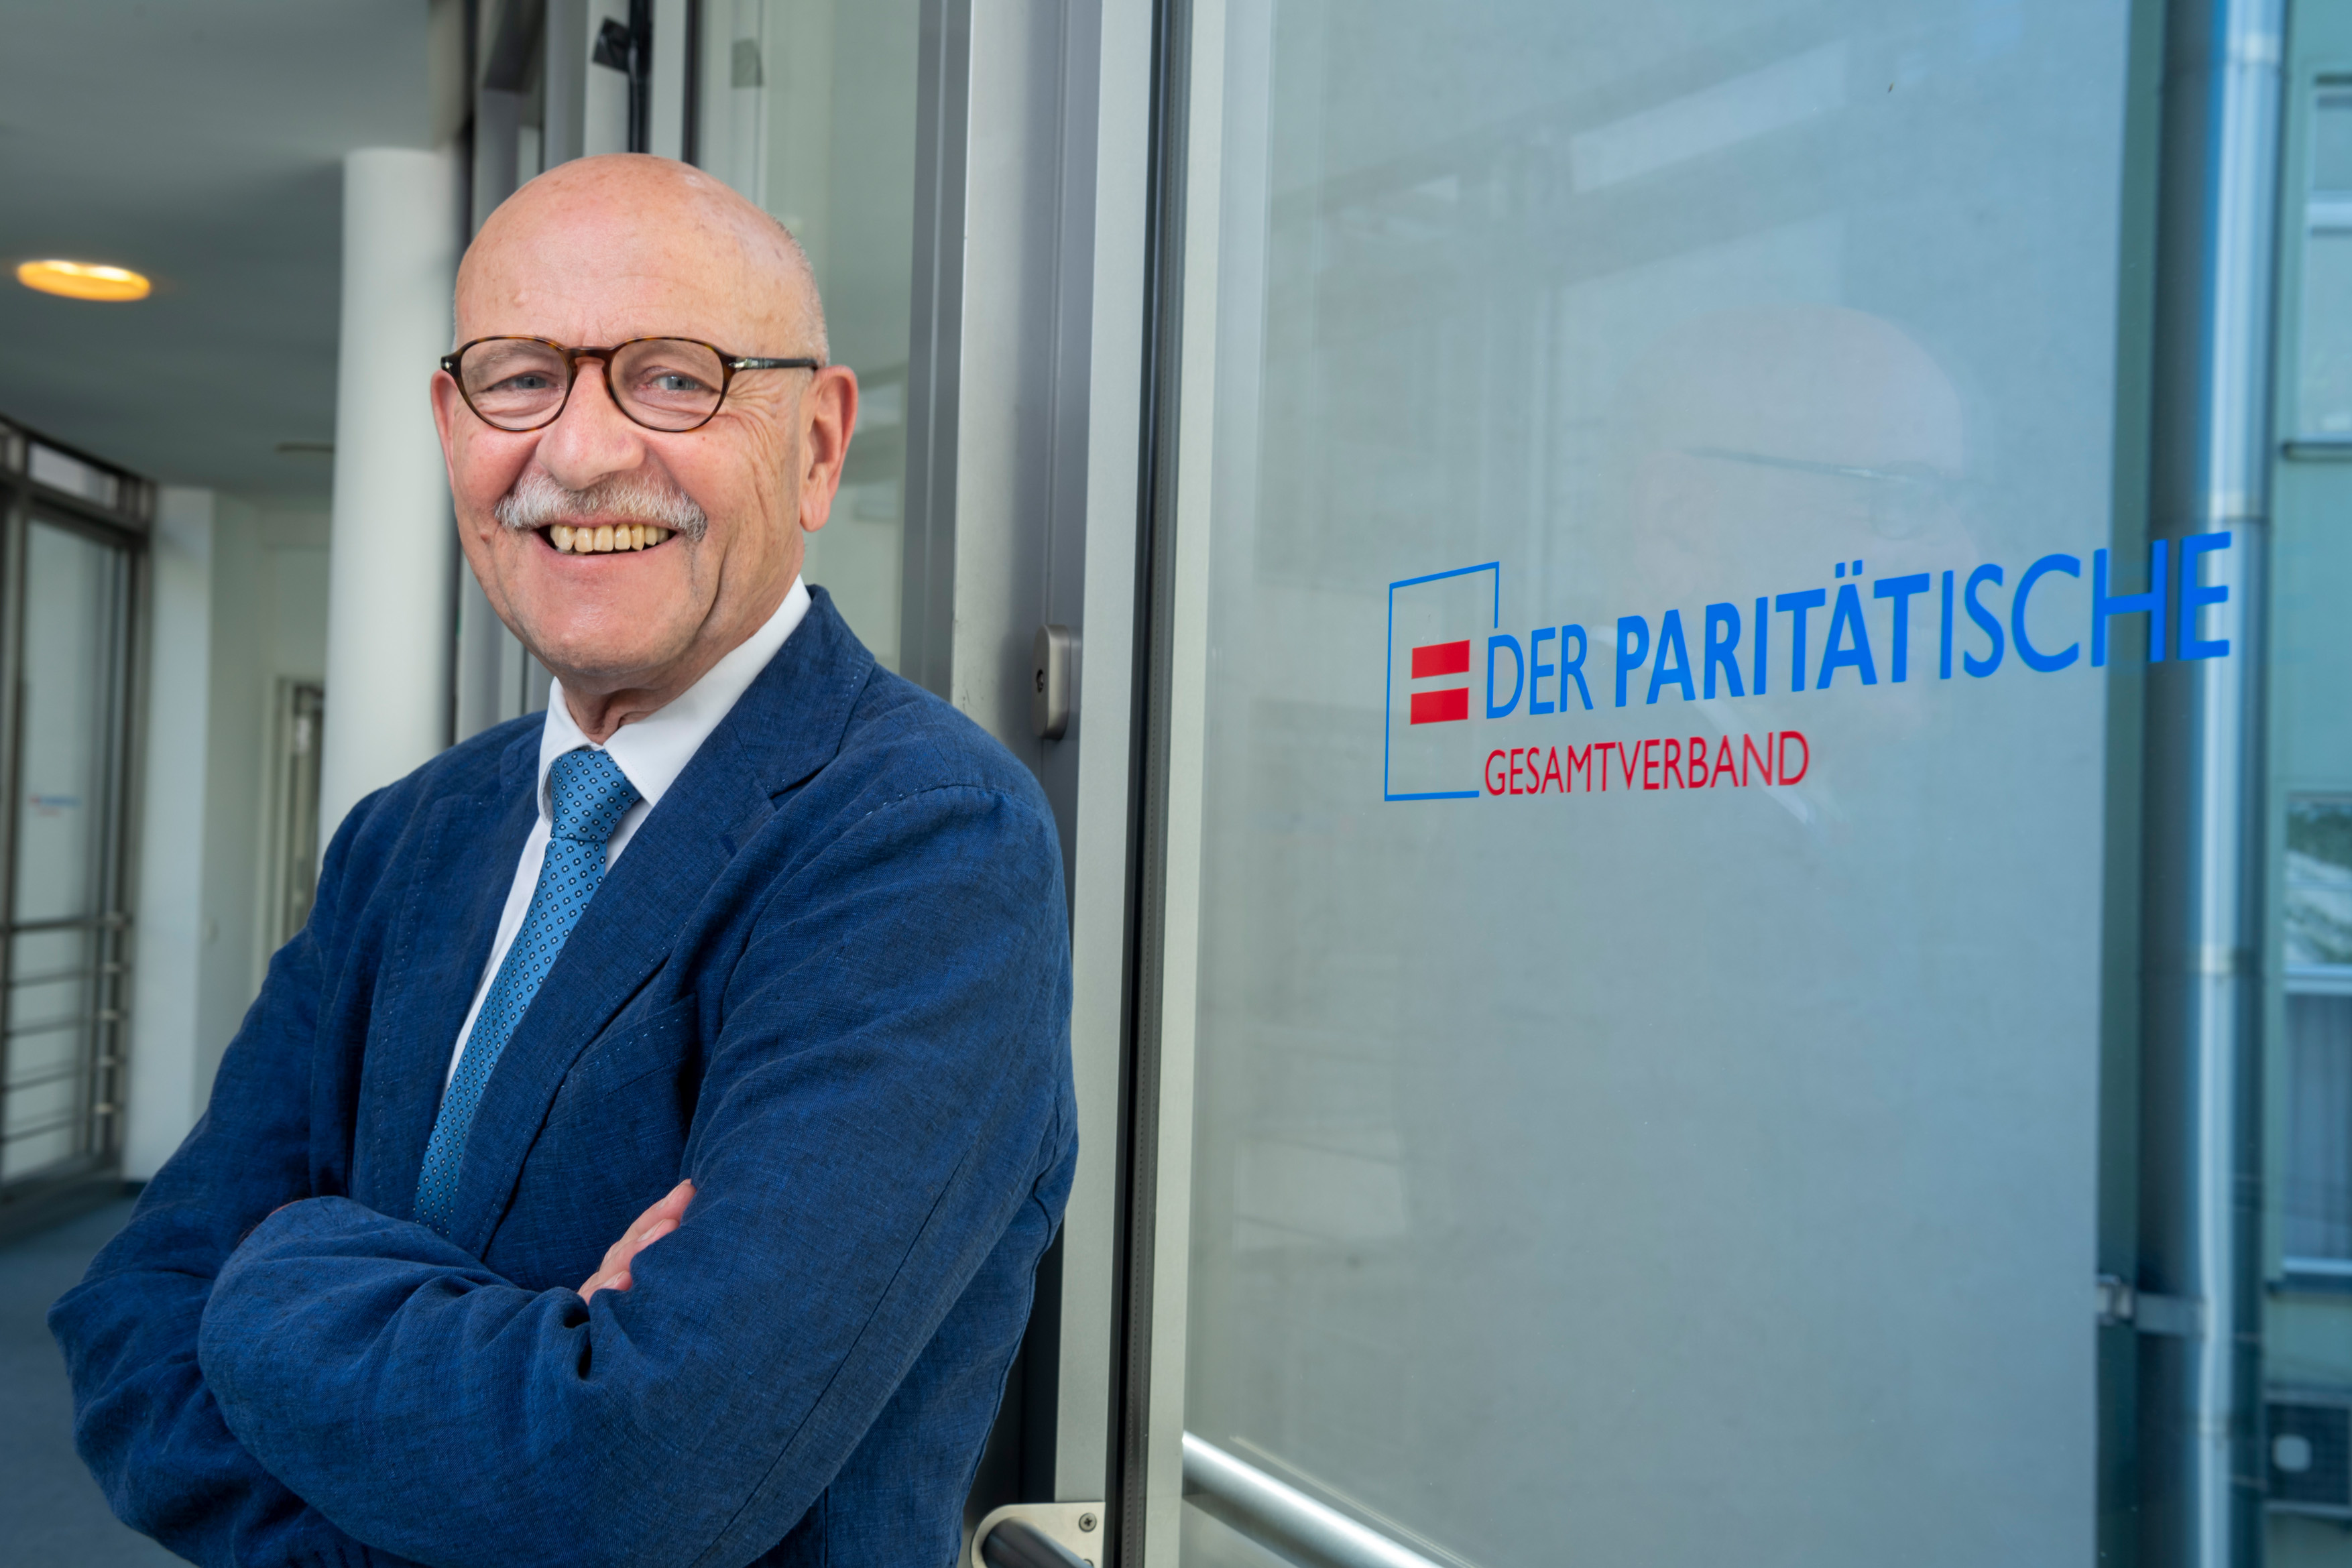 Ein Mann, mit Brille steht lächelnd vor einer Fensterscheibe, auf welcher das Logo des Paritätischen zu sehen ist. Es ist Prof. Dr. Rosenbrock, Vorsitzender des Paritätischen Gesamtverbandes.